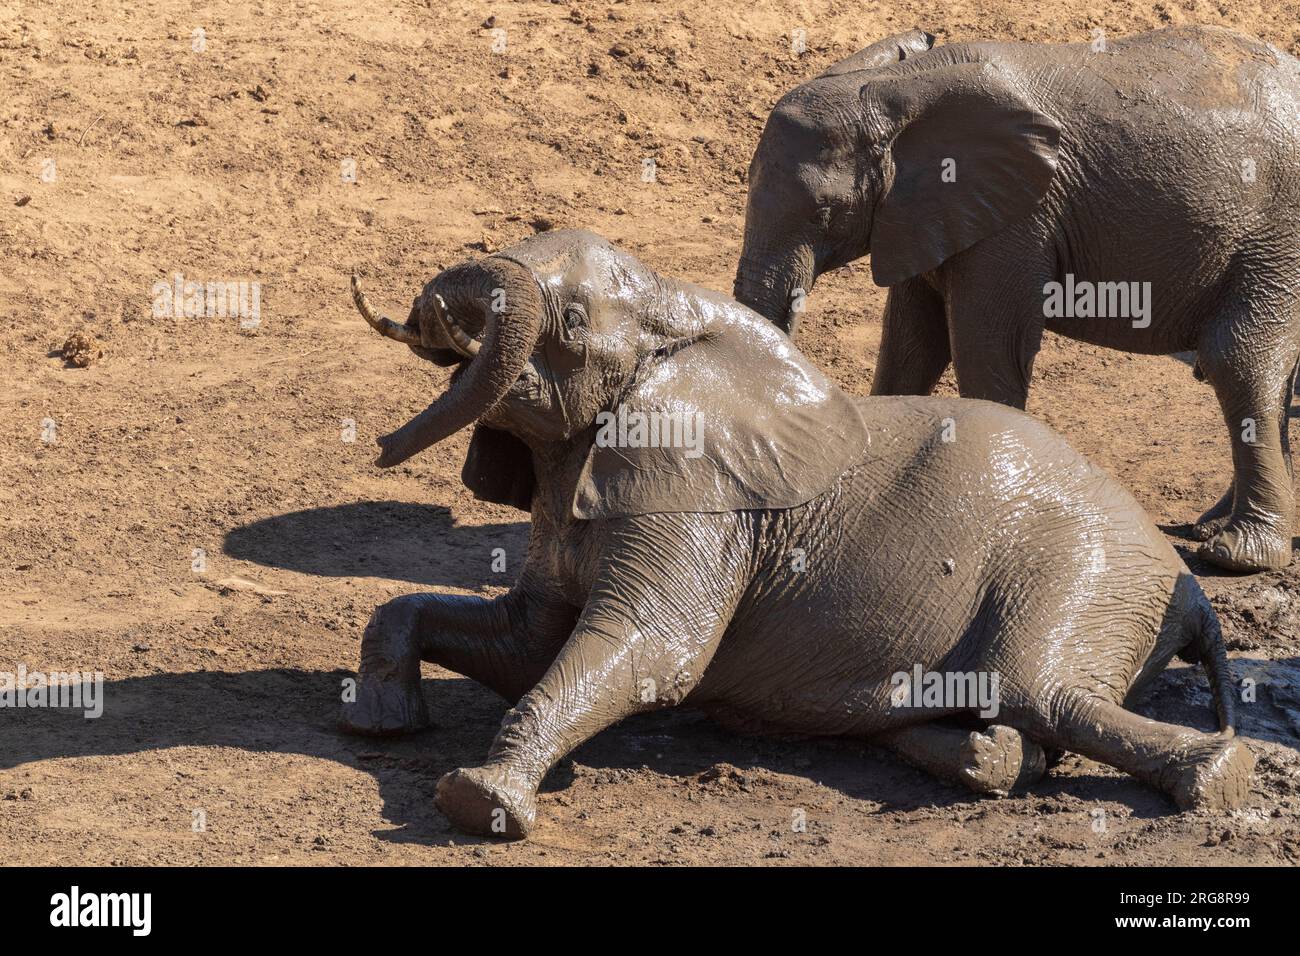 Un veau éléphant se vautrant dans un bain de boue au soleil dans le parc national Kruger, en Afrique du Sud Banque D'Images